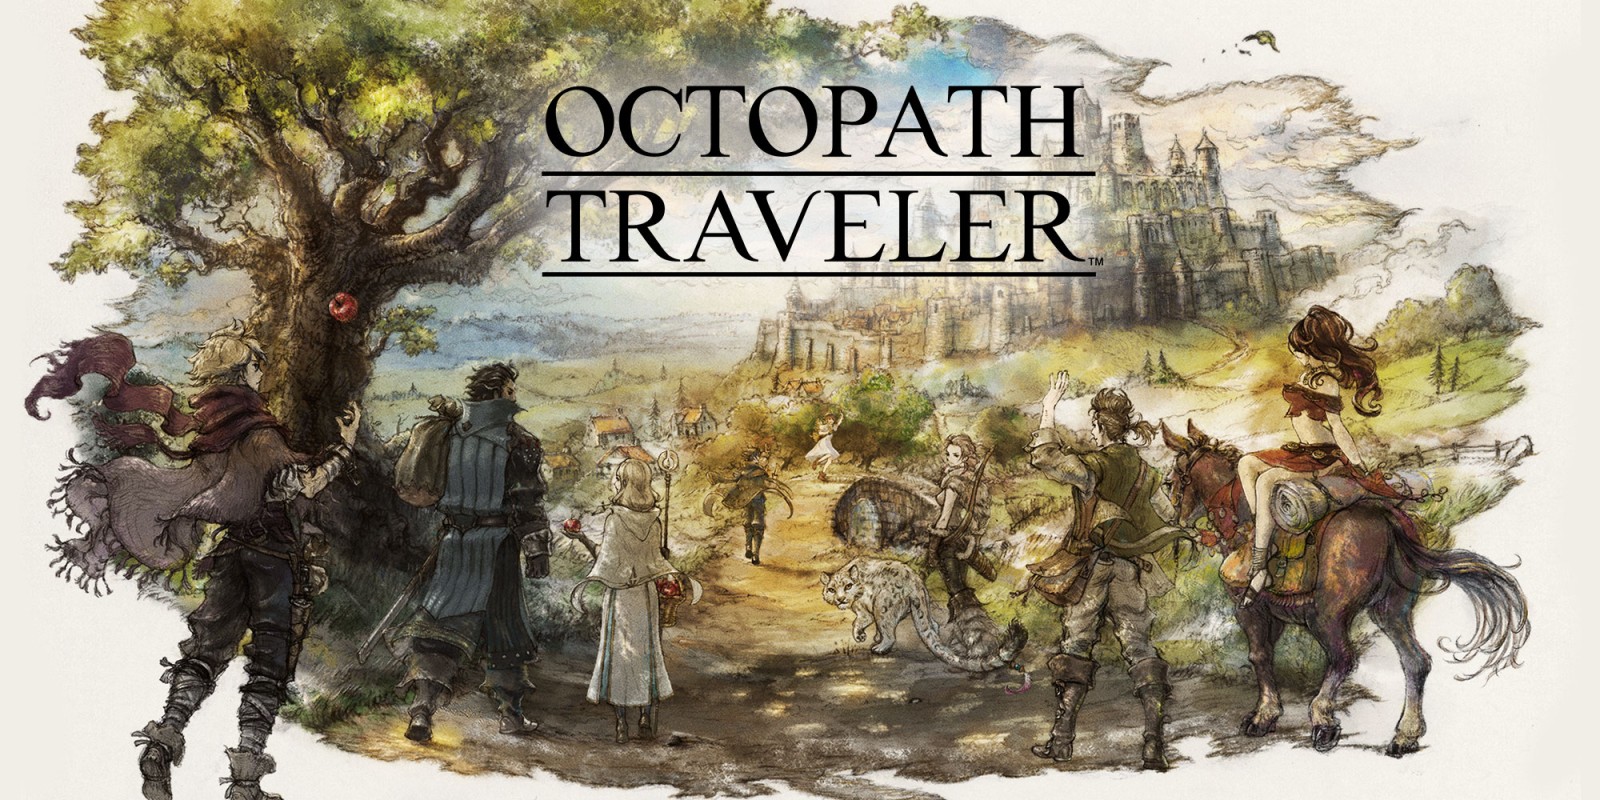 Octopath Traveler E3 trailer